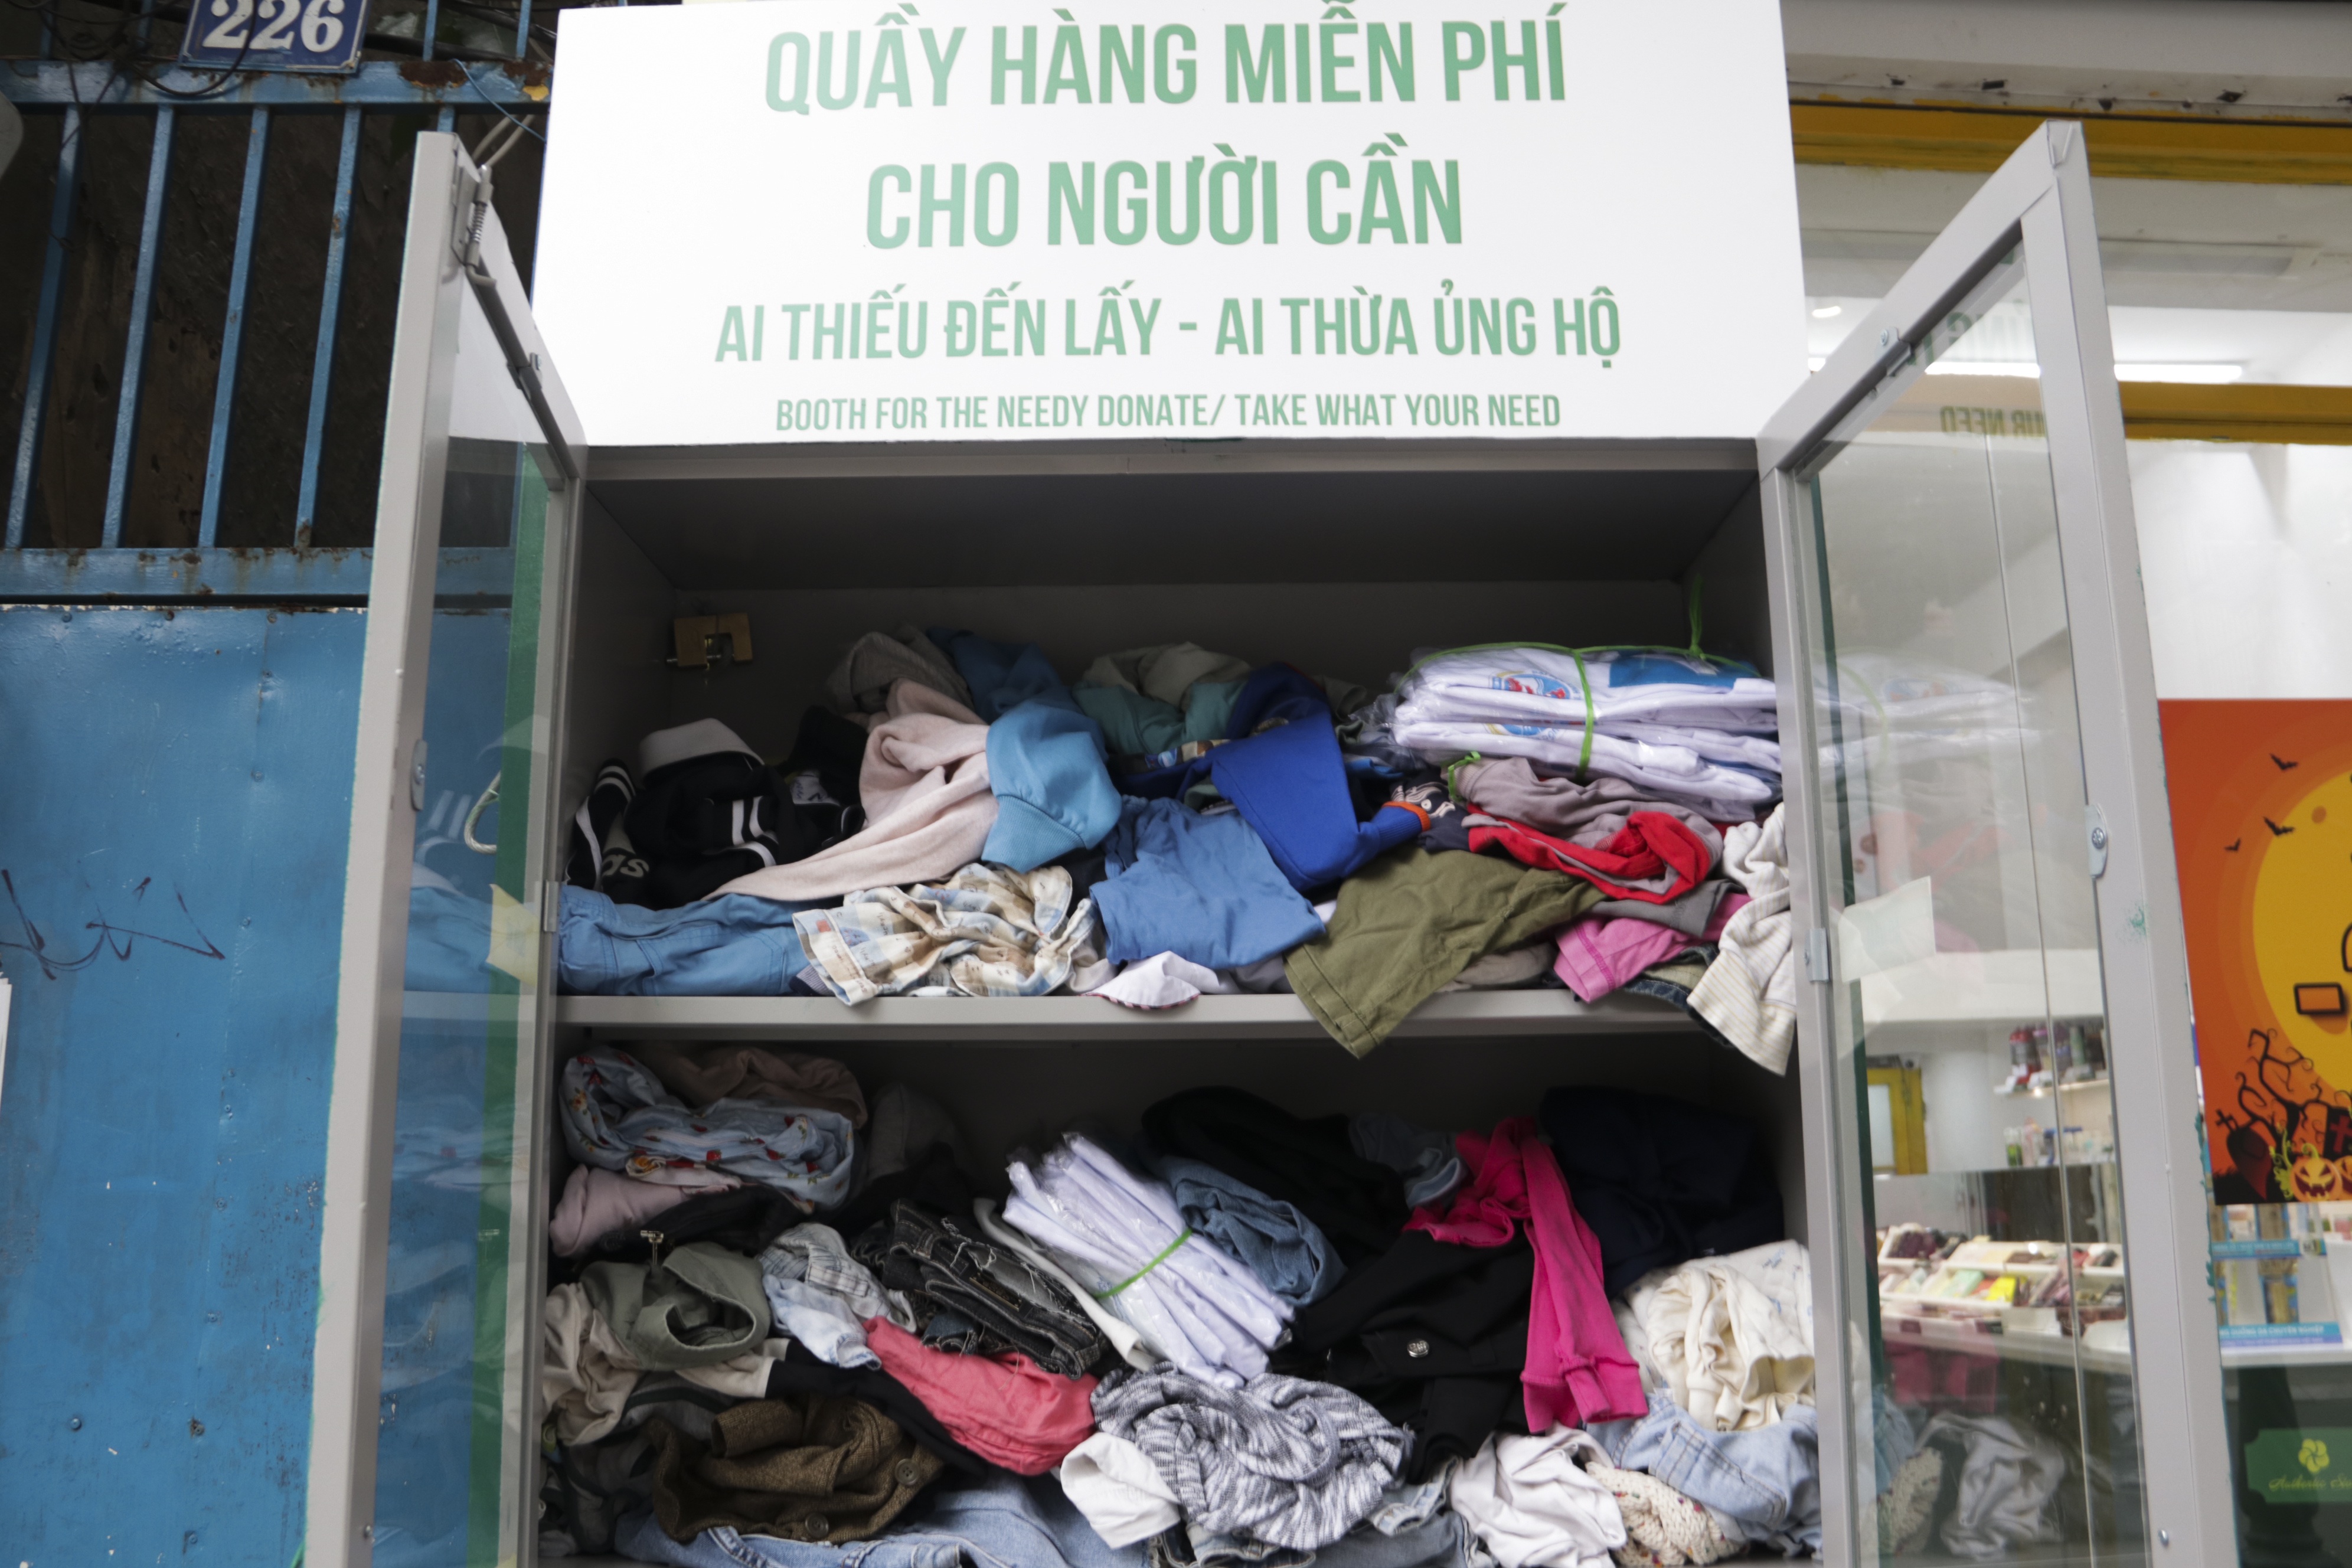 Hà Nội: Xuất hiện nhiều tủ quần áo 0 đồng dành cho người nghèo ...